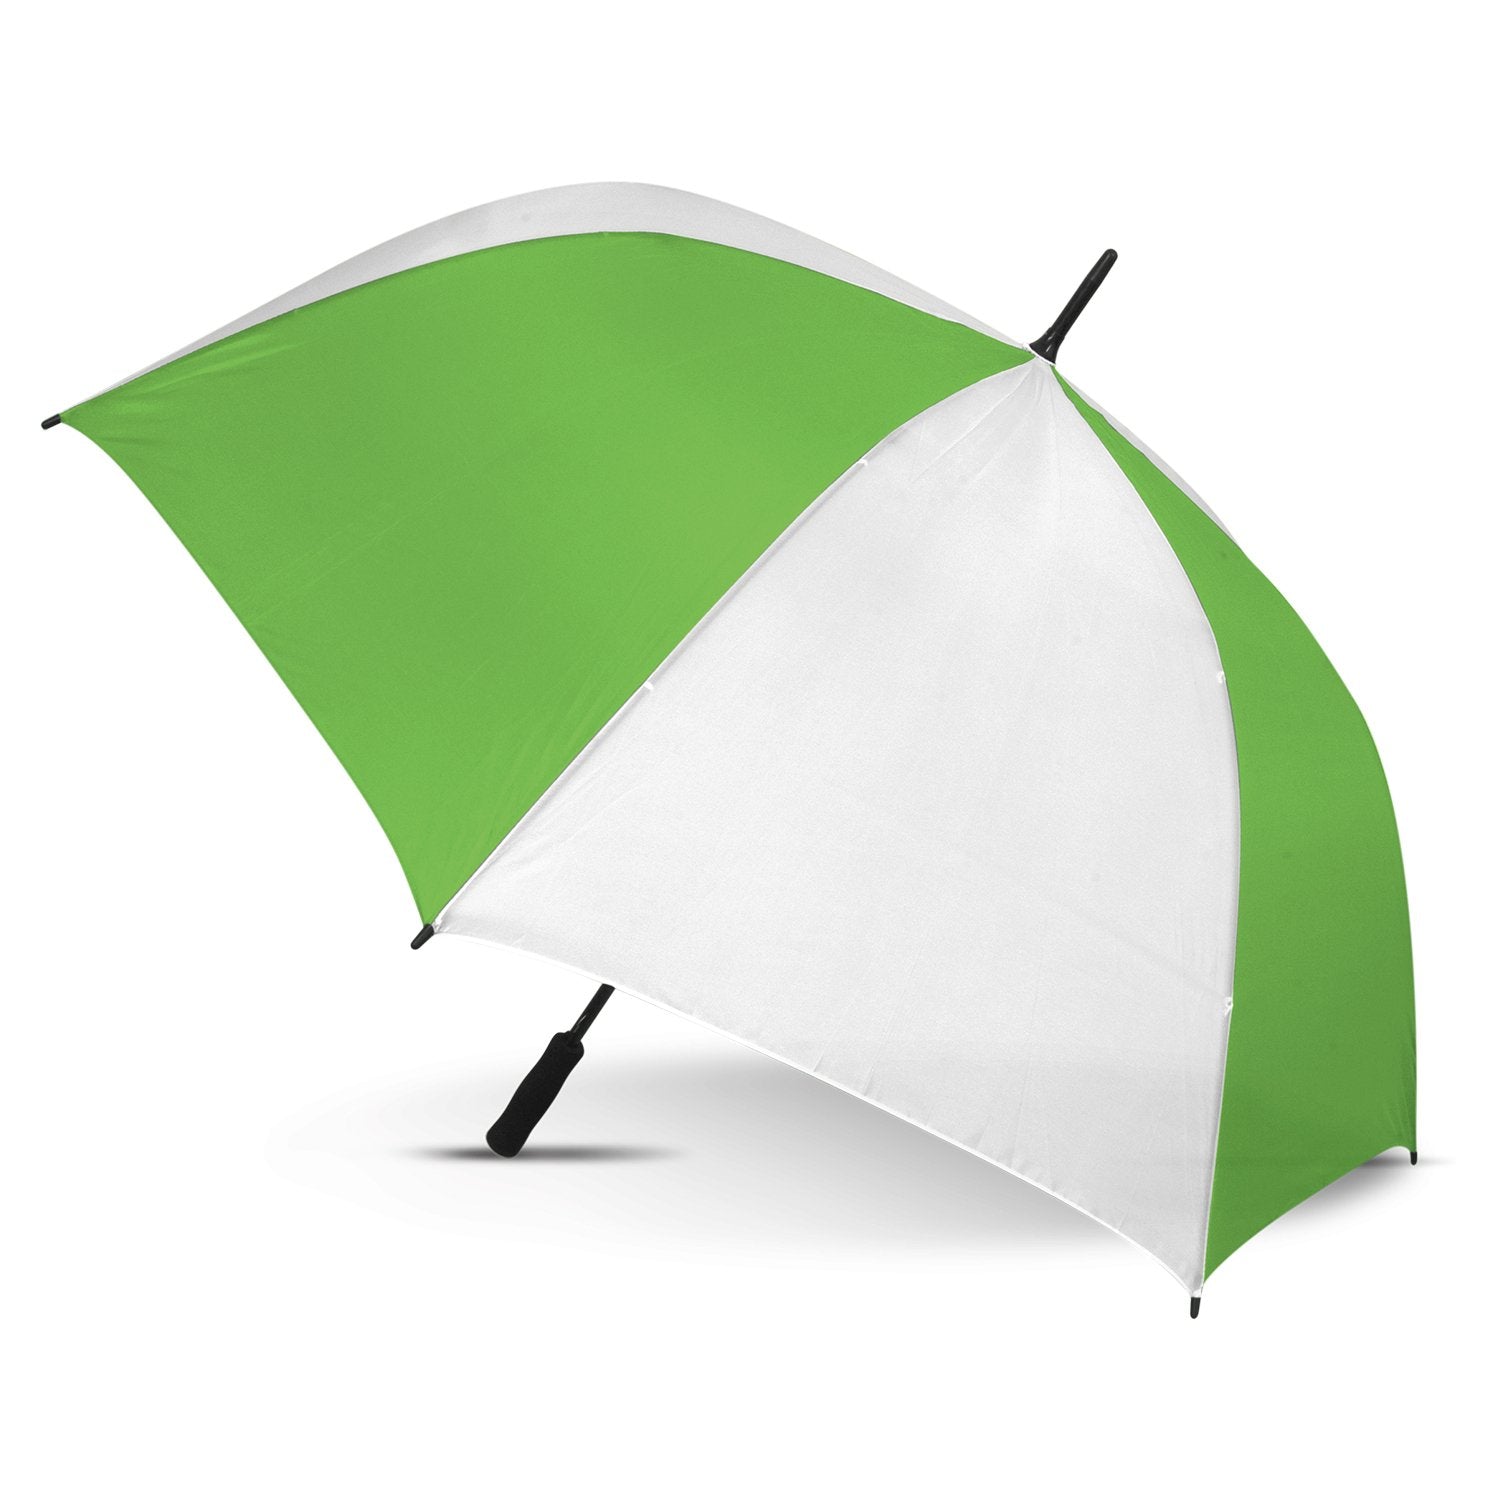 STORM-PROOF®️-premium-sports-umbrella-auto-open-white-and-bright-green-umbrella